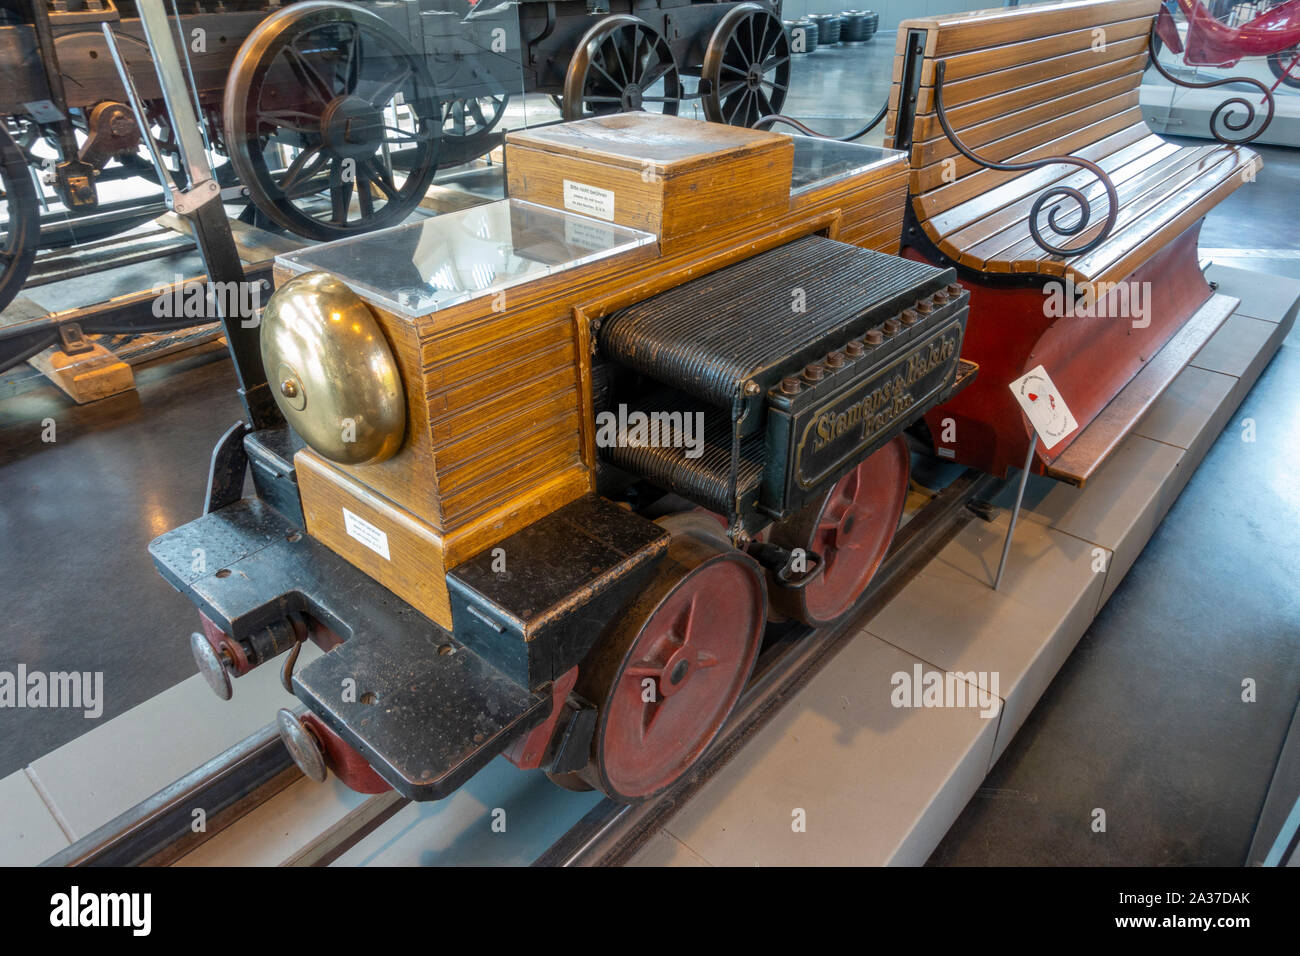 The first electric locomotive,(1879) by Siemens & Halske in the Deutsches Museum Verkehrszentrum (German Transport Museum), Munich, Germany. Stock Photo